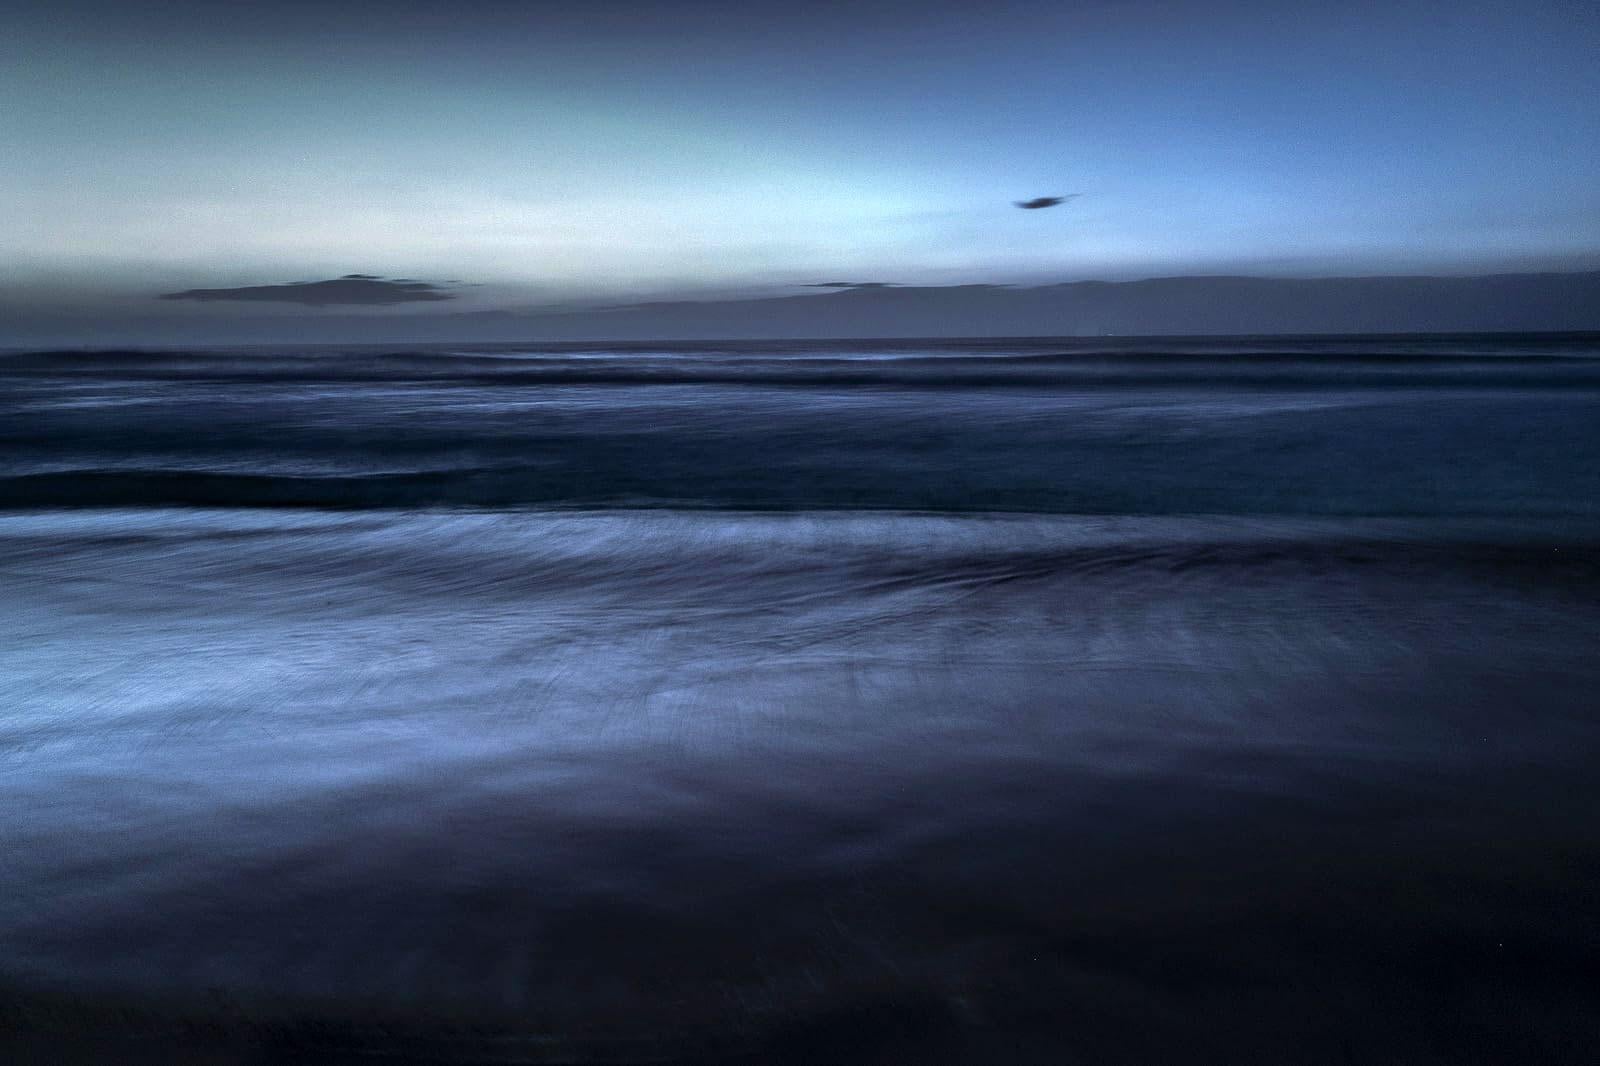 The sea, Brazil - Photograph by Sergio Ranalli